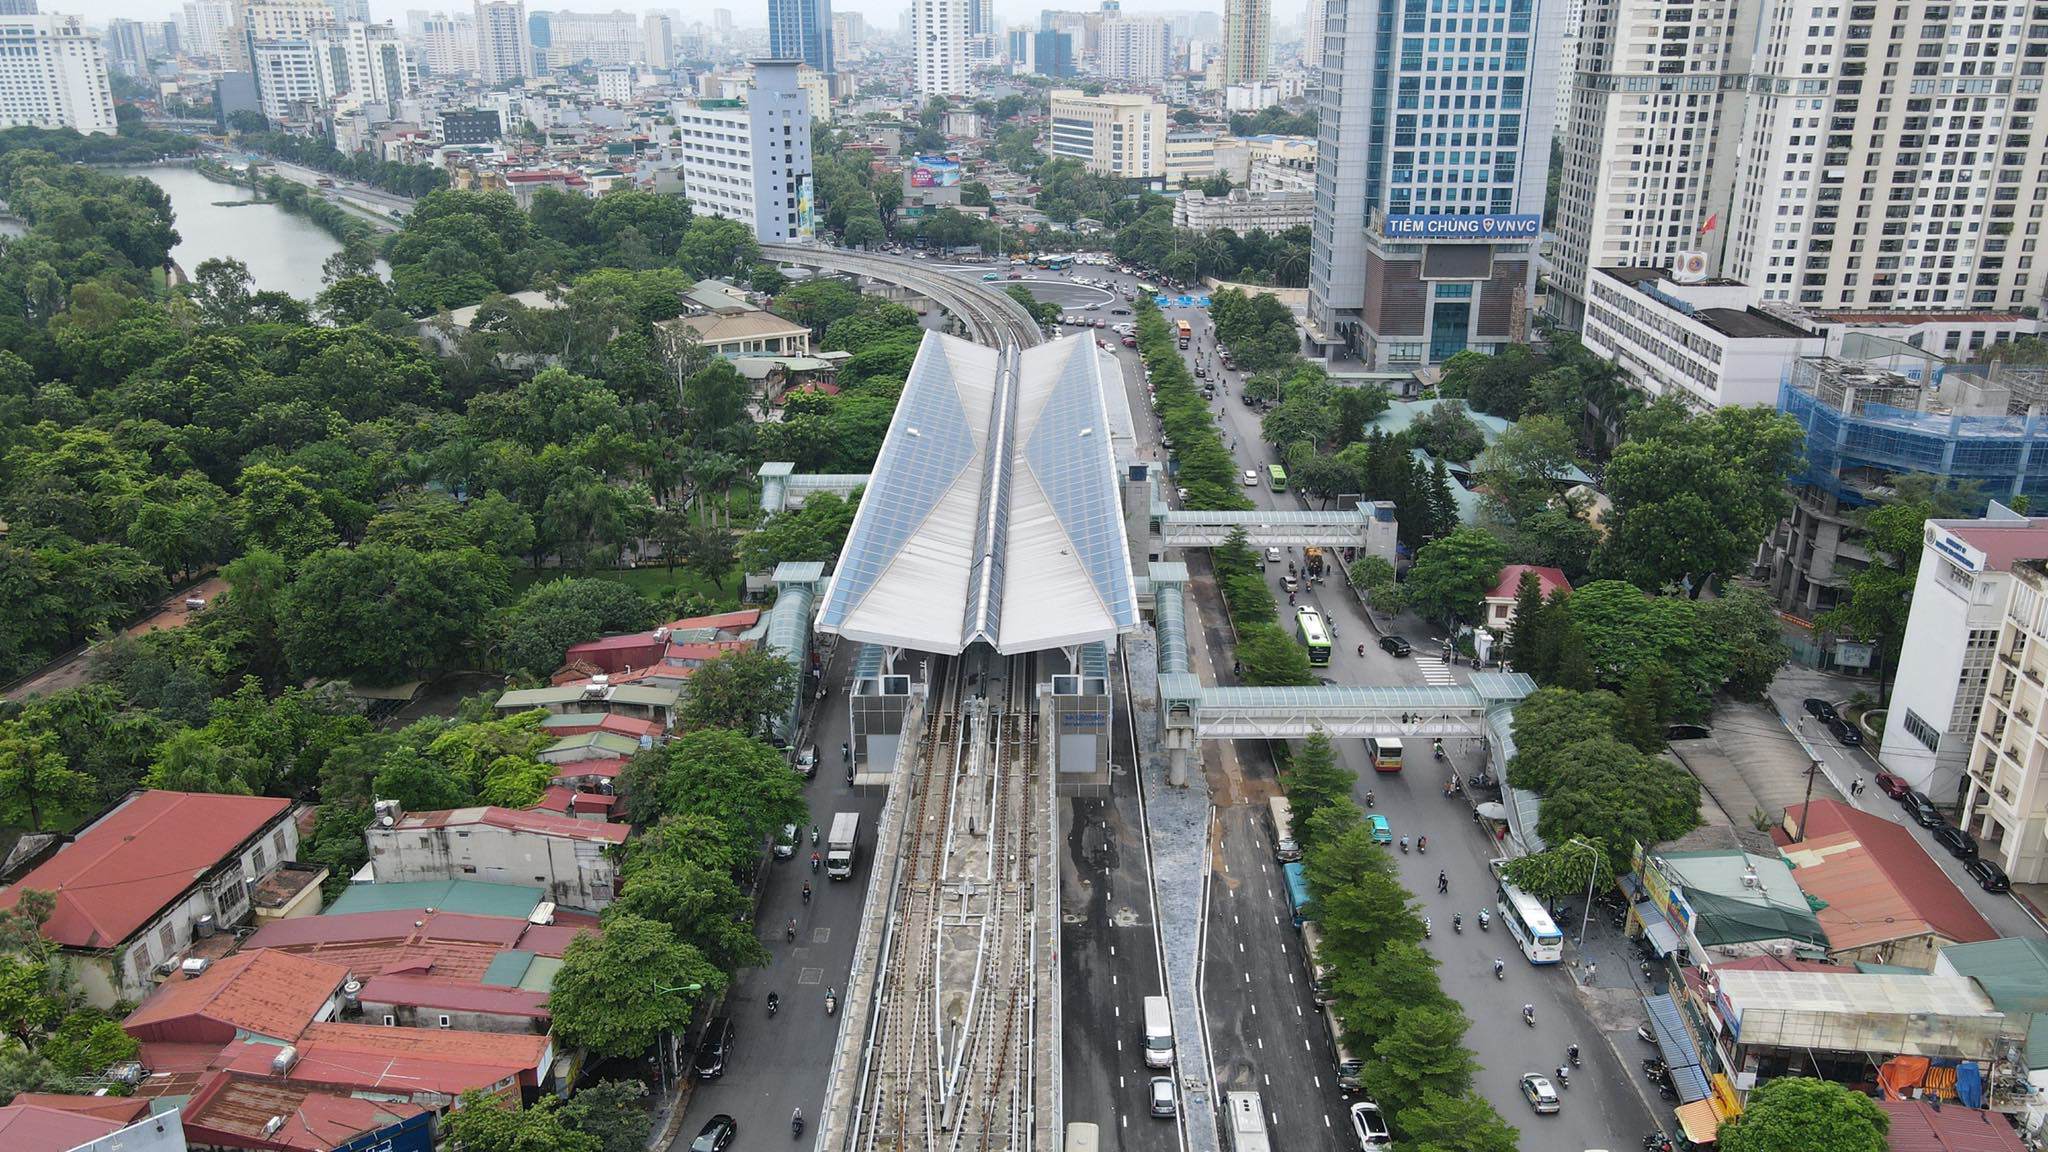 Sáng 28/8, Ban Quản lý Đường sắt đô thị Hà Nội (MRB) cho biết, đơn vị đã hoàn thành xây dựng, lắp đặt tại 8 nhà ga trên cao tuyến đường sắt đô thị đoạn Nhổn - ga Hà Nội.